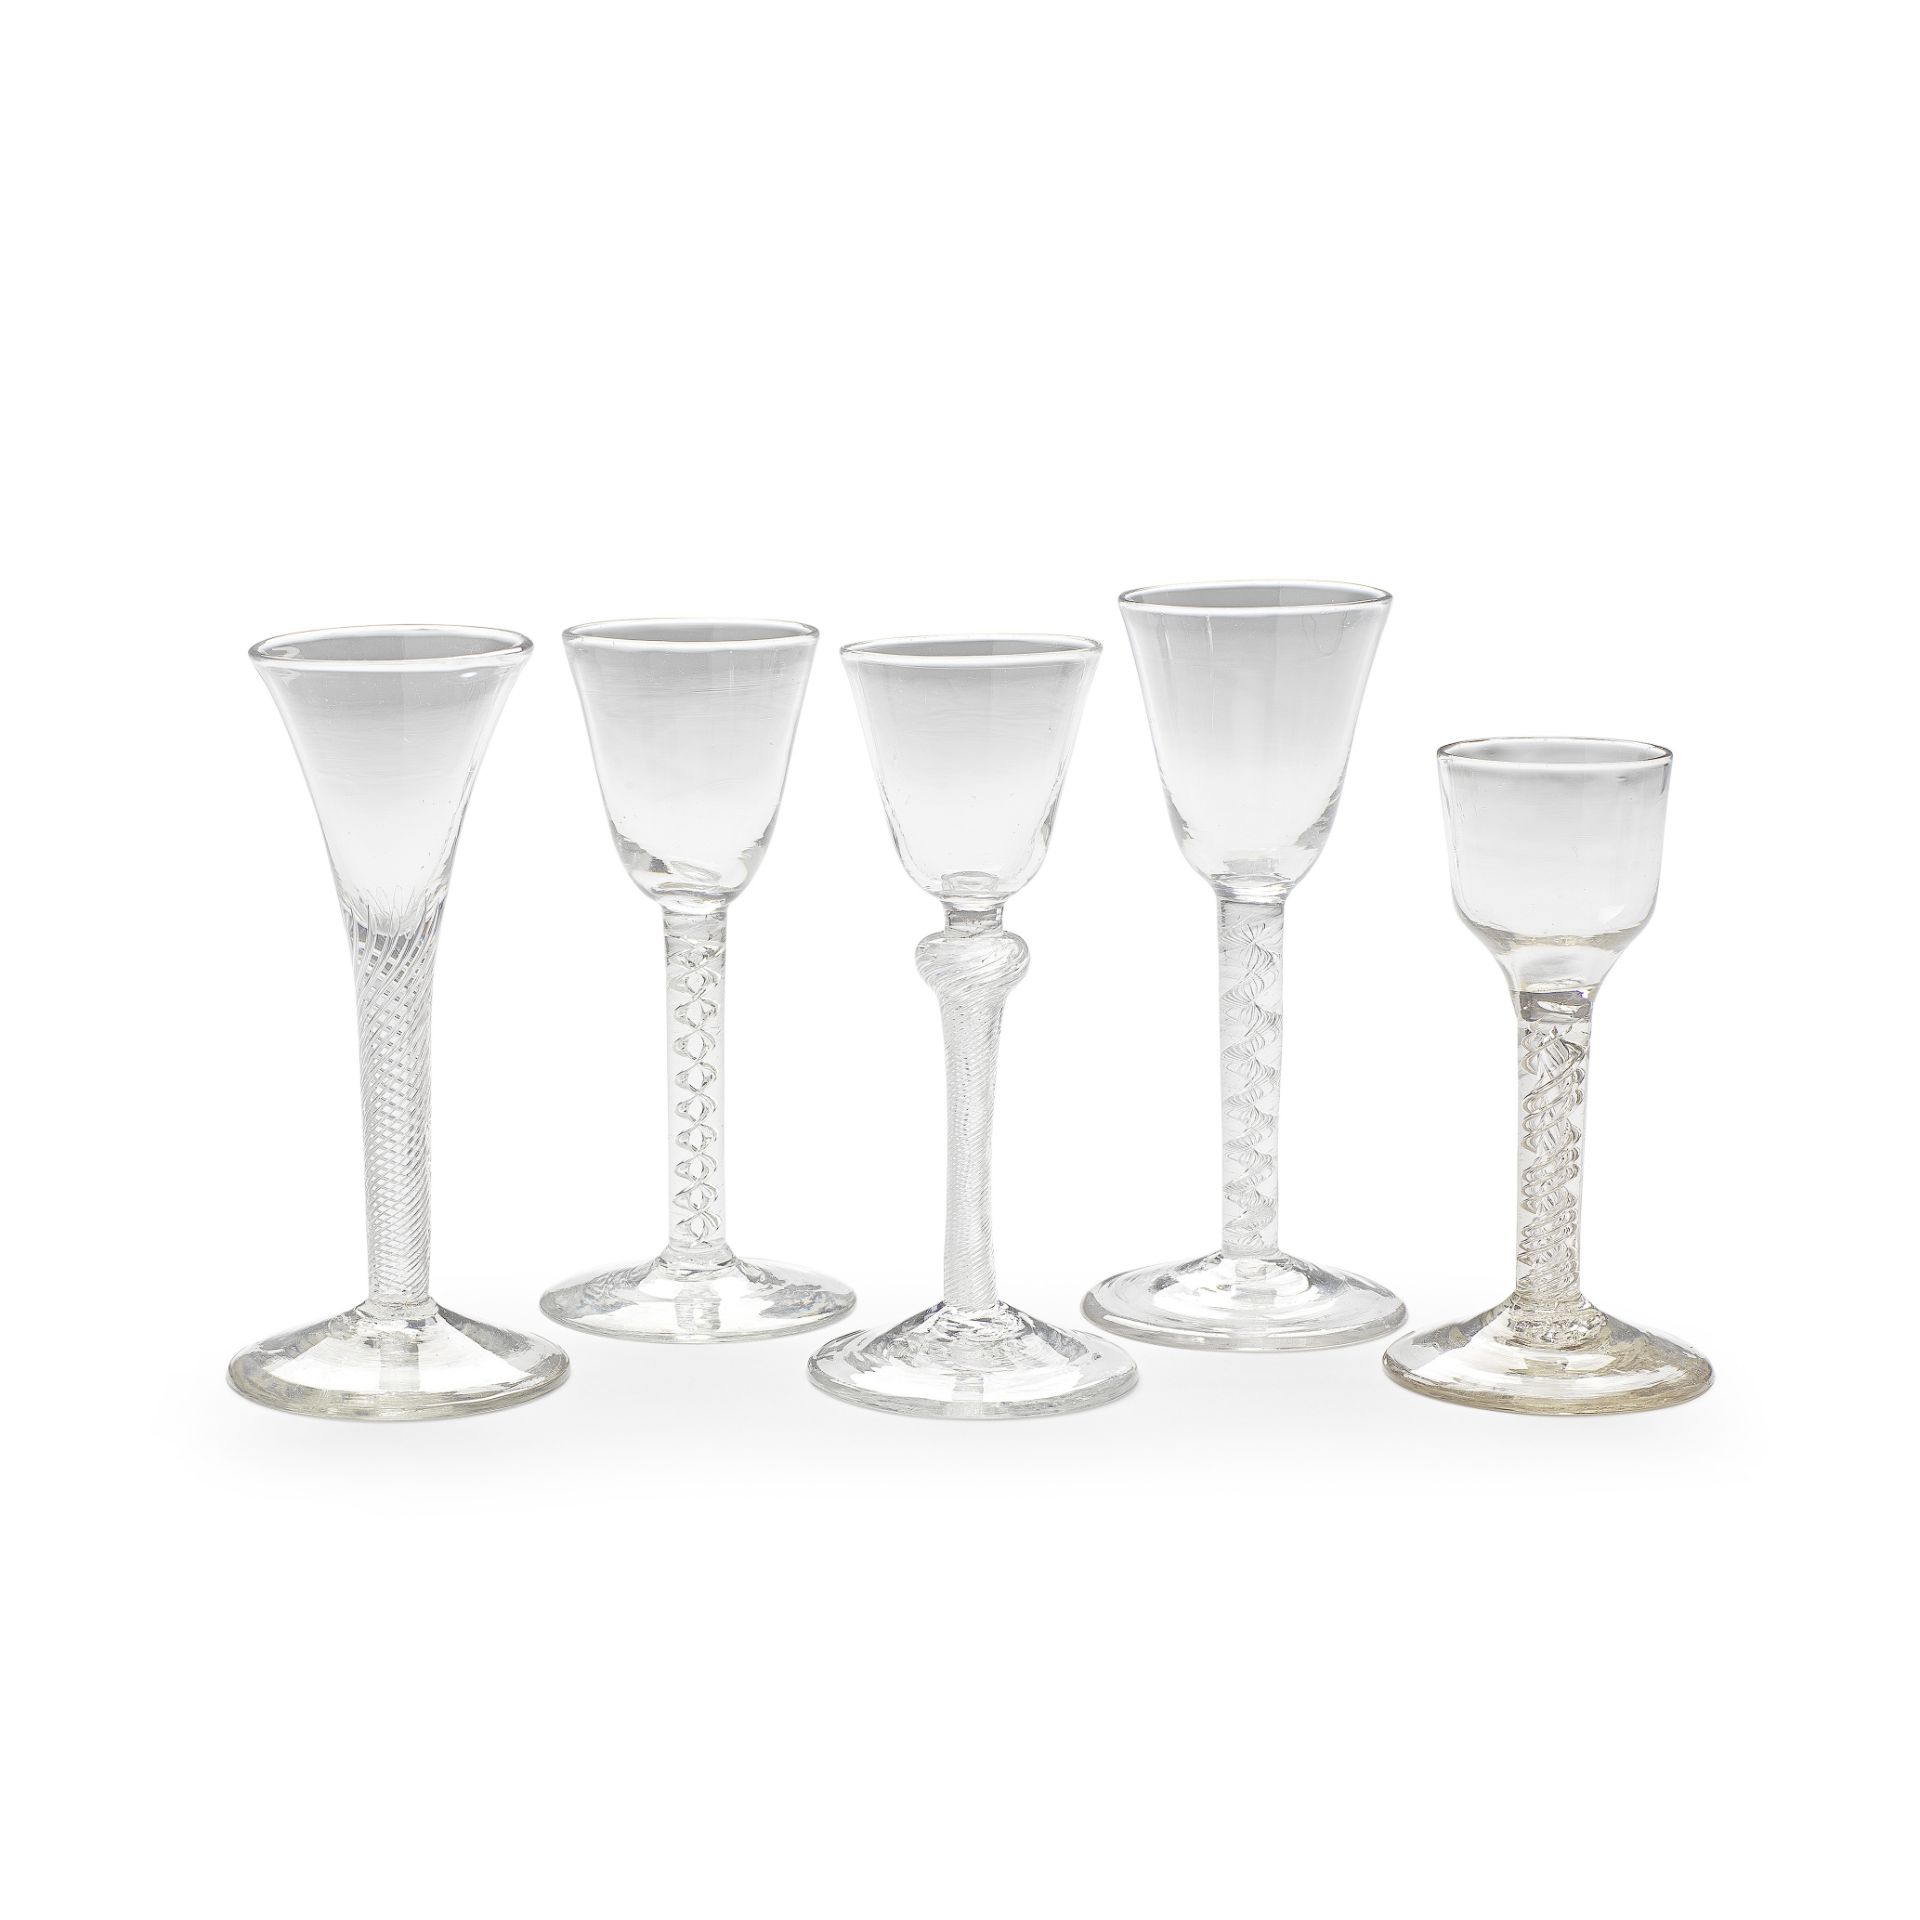 Five airtwist wine glasses, circa 1750